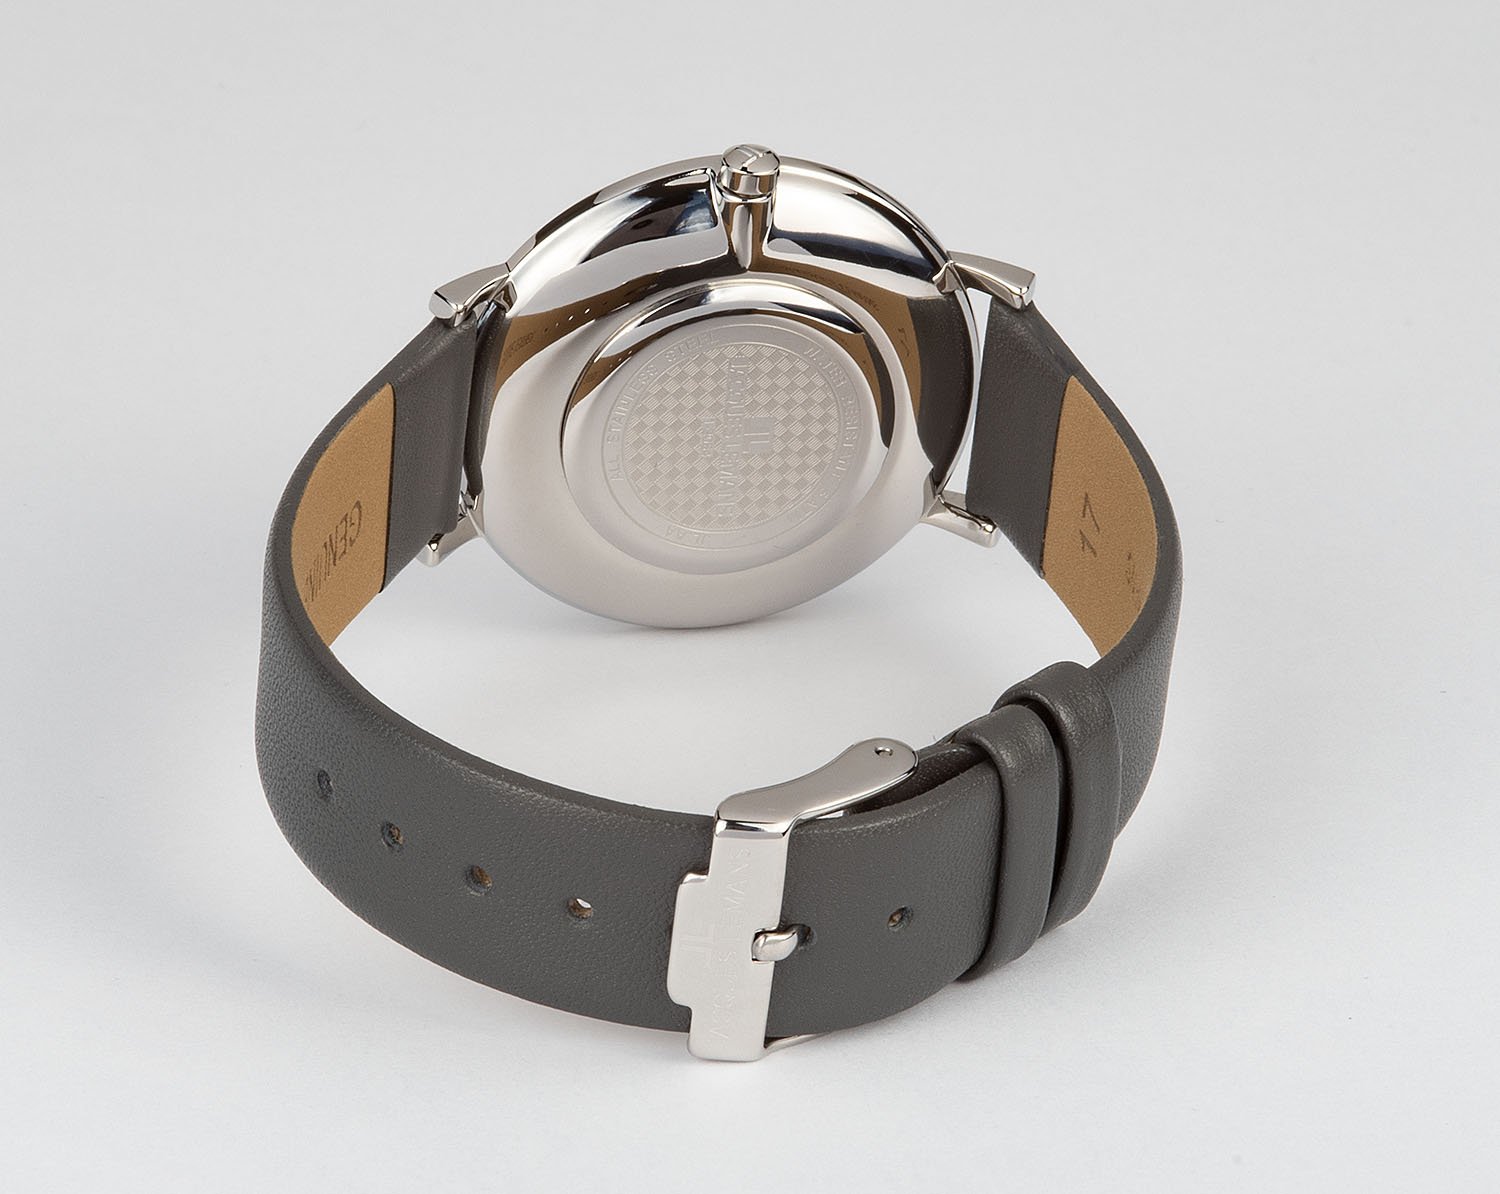 1-2054A, наручные часы Jacques Lemans